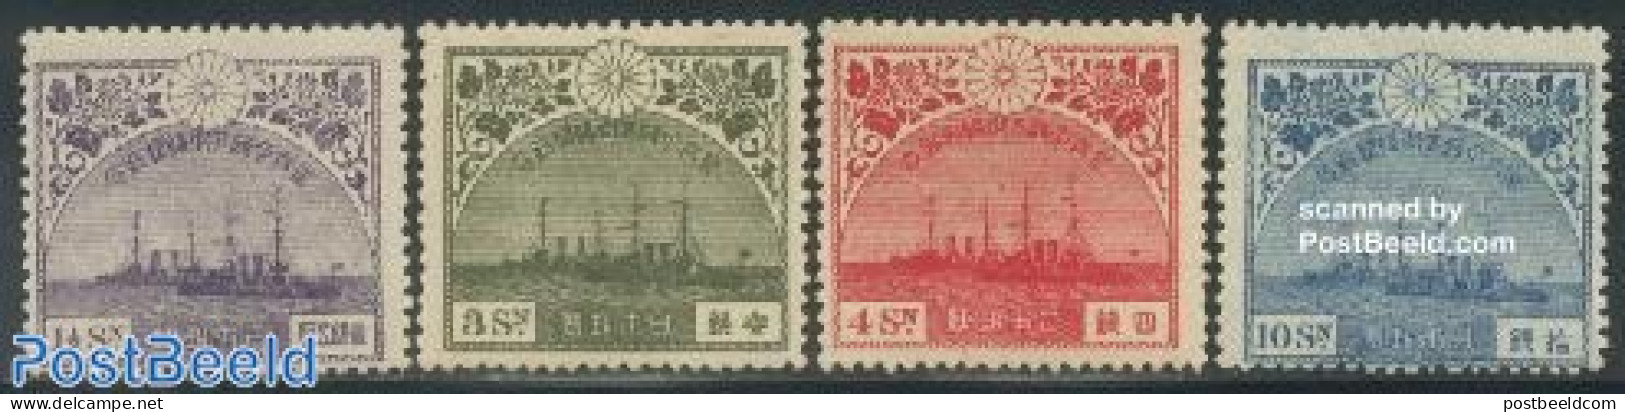 Japan 1921 European Visit Of Crown Prince 4v, Unused (hinged), History - Transport - Kings & Queens (Royalty) - Ships .. - Ongebruikt